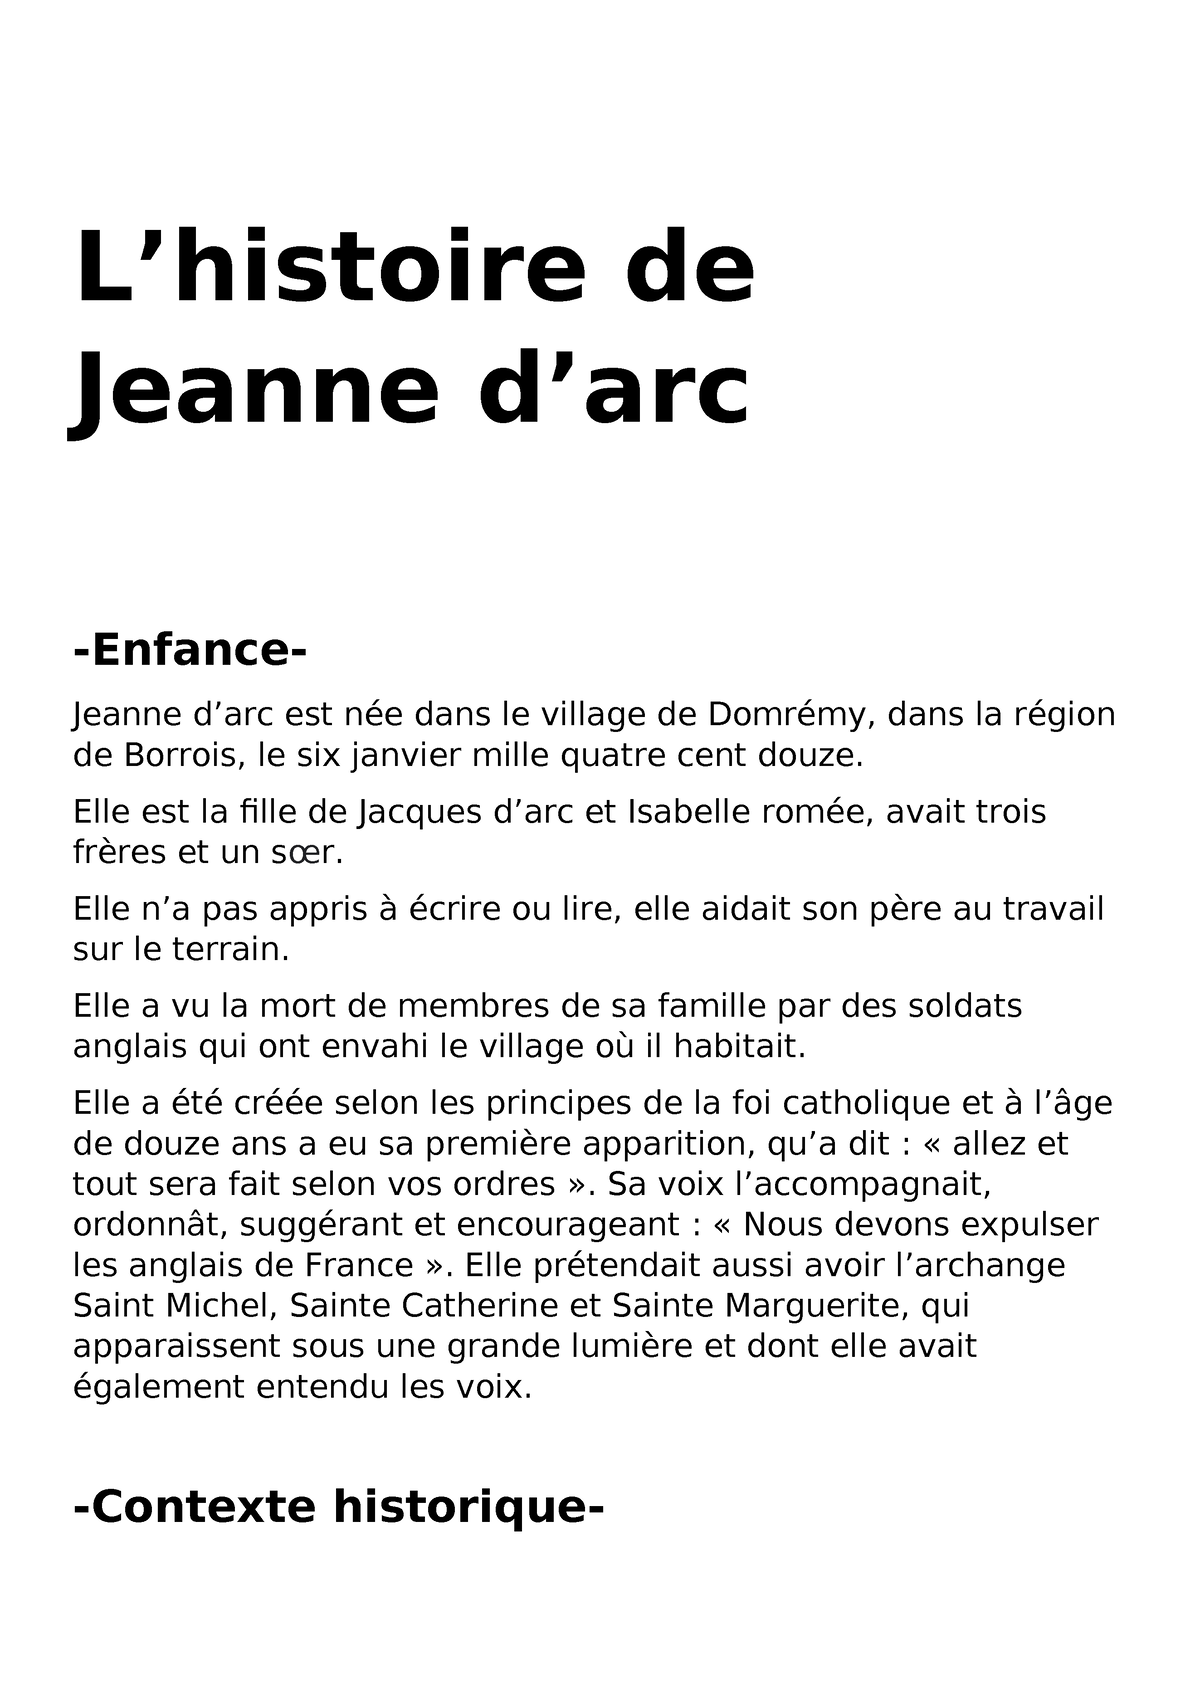 Jeanne d'arc - tgyhjdtyjdetyjdetyjtyj - L’histoire de Jeanne d’arc ...